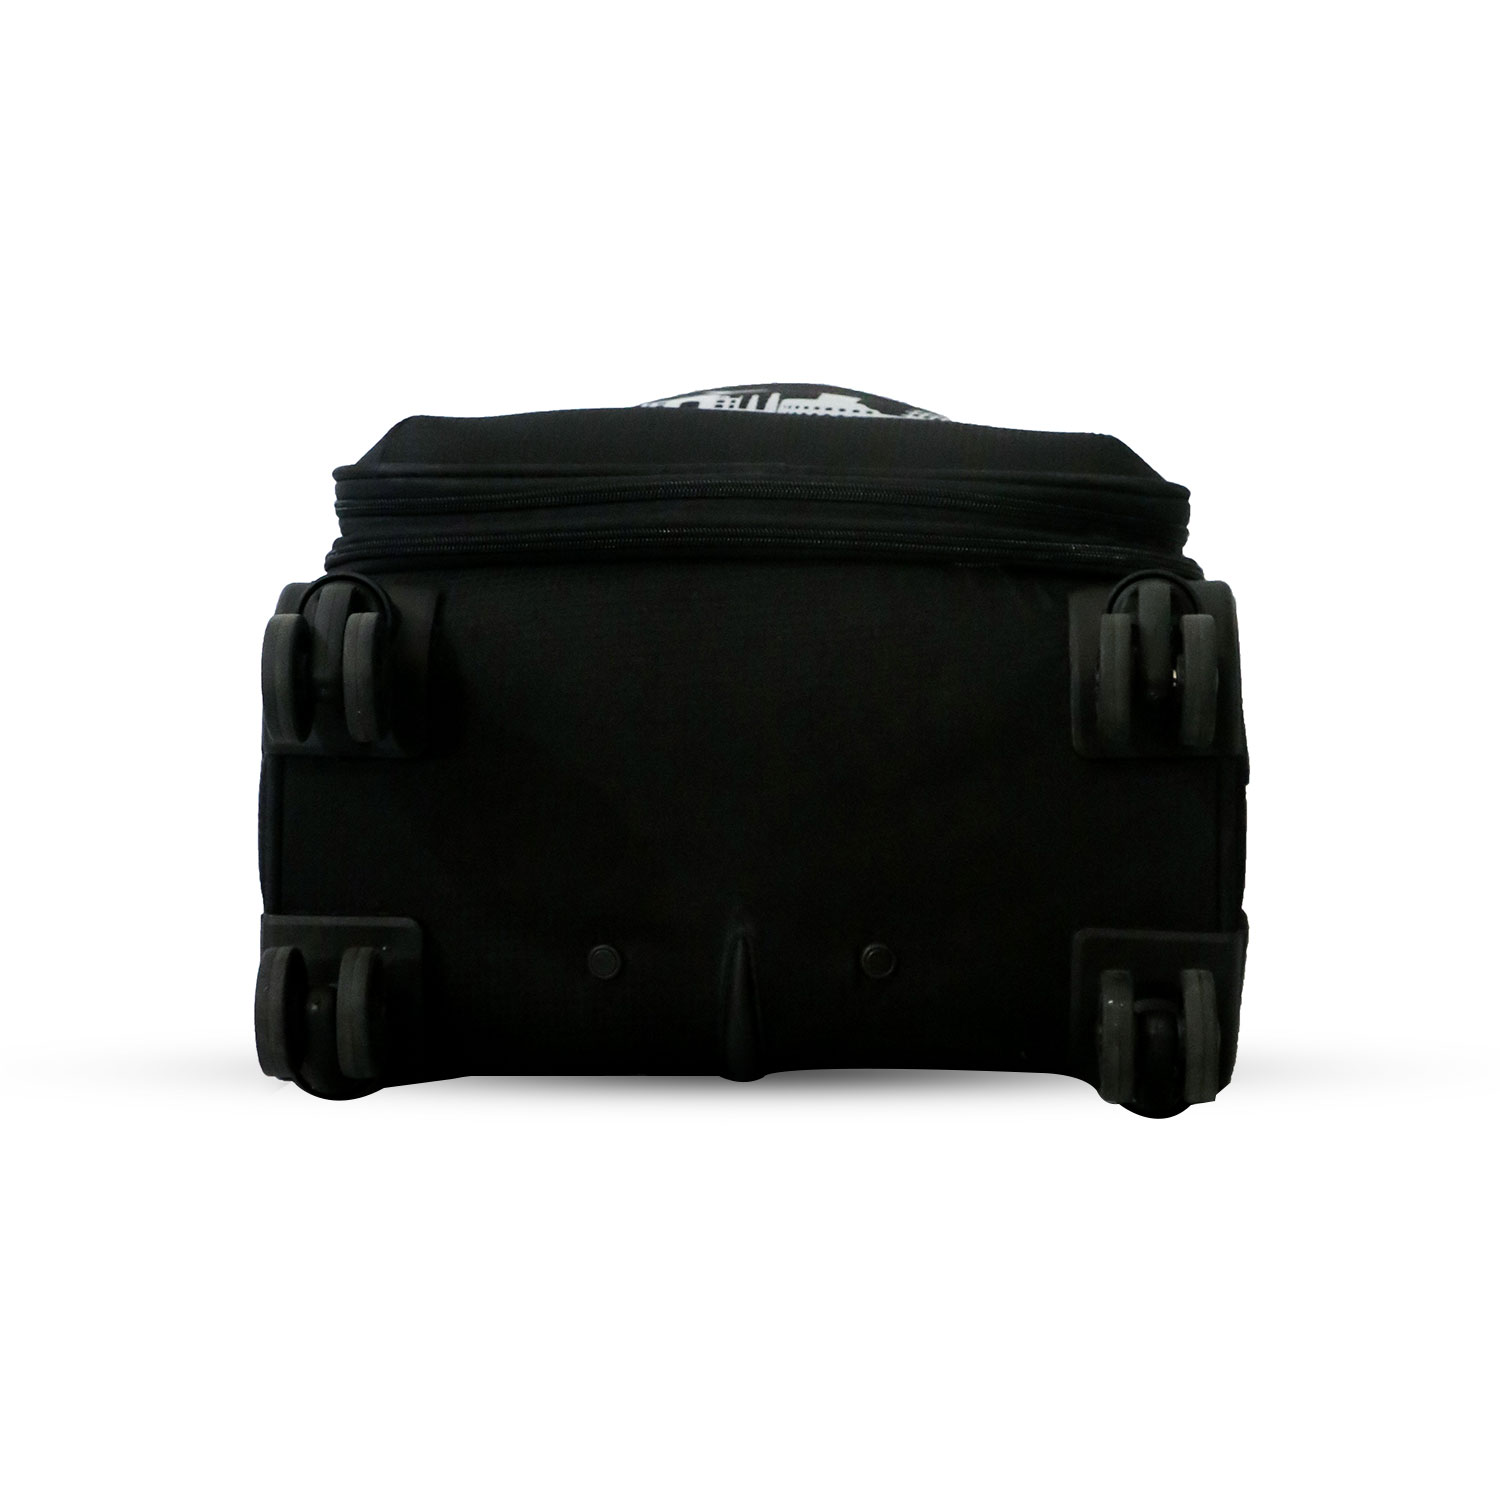 Timus-Lifestyle-Luggage-Soft-Luggage-trolley-bag-Salsa-Plus-Luggage-Trolley-Bag-58cm-Black